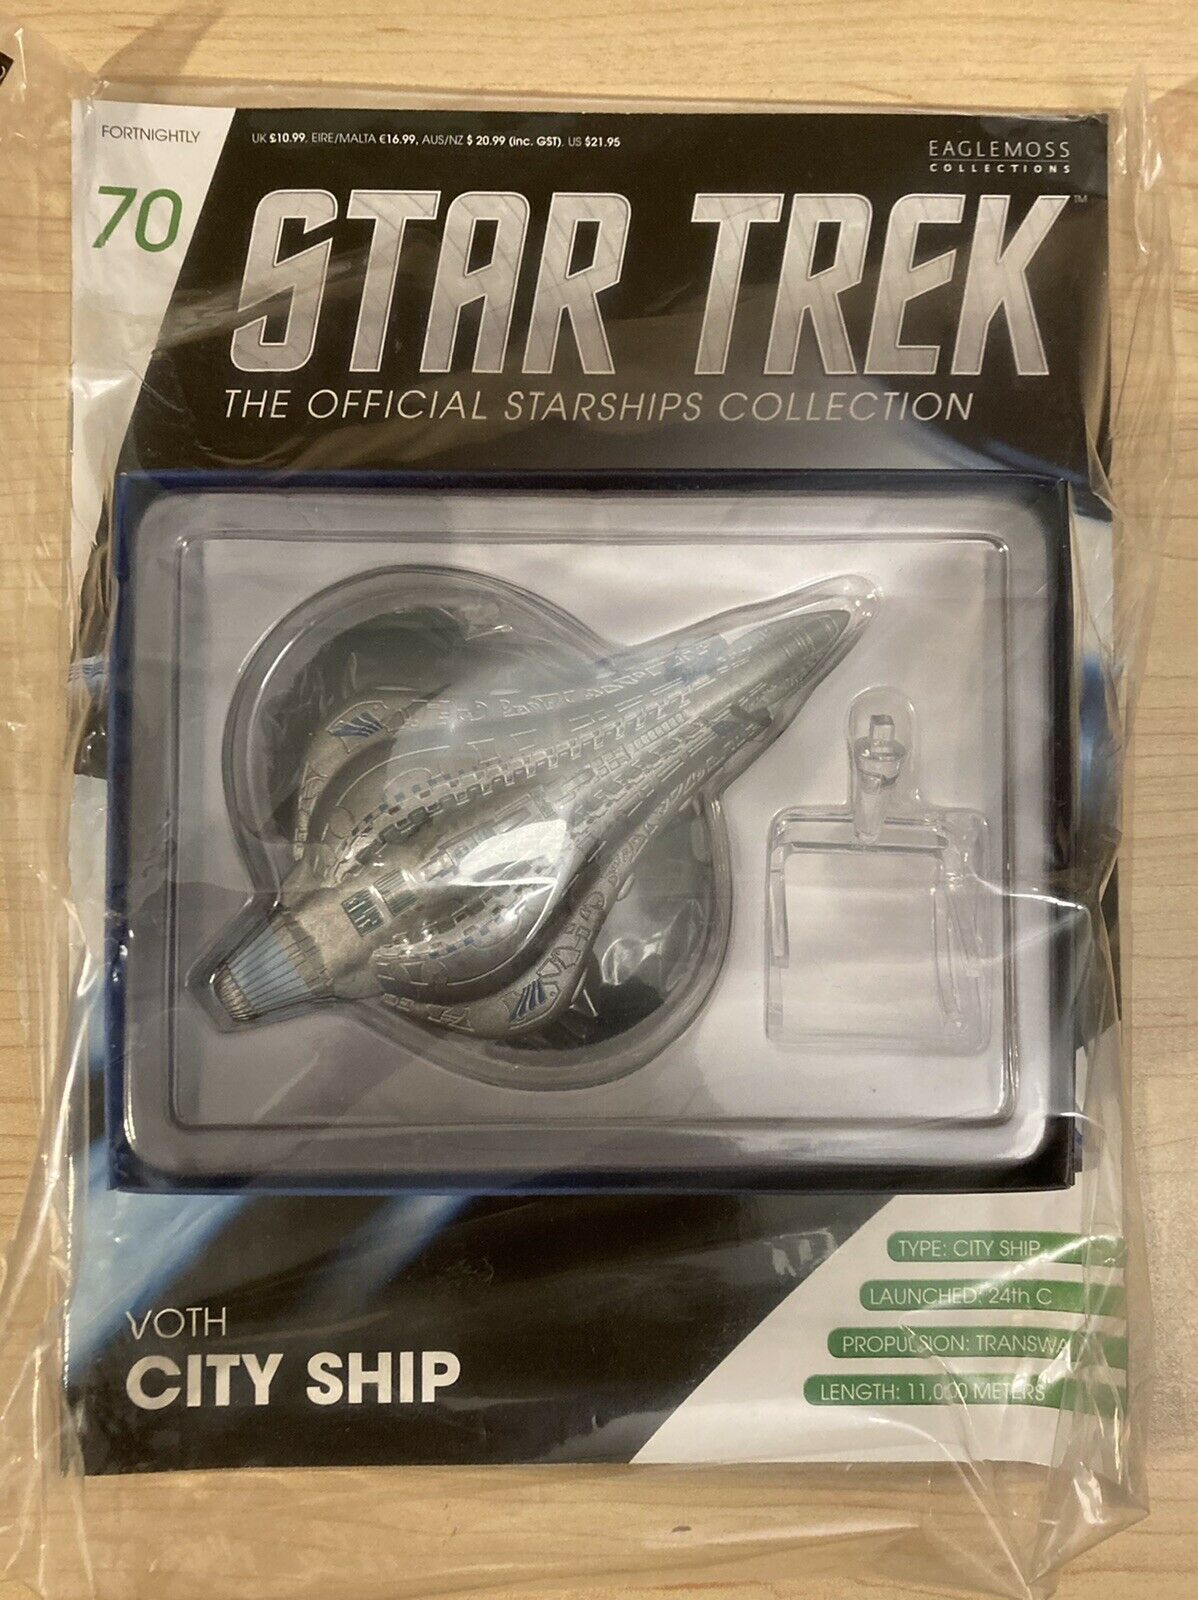 Eaglemoss Diecast Star Trek Voth City Ship #70 With Magazine New Sealed Starship